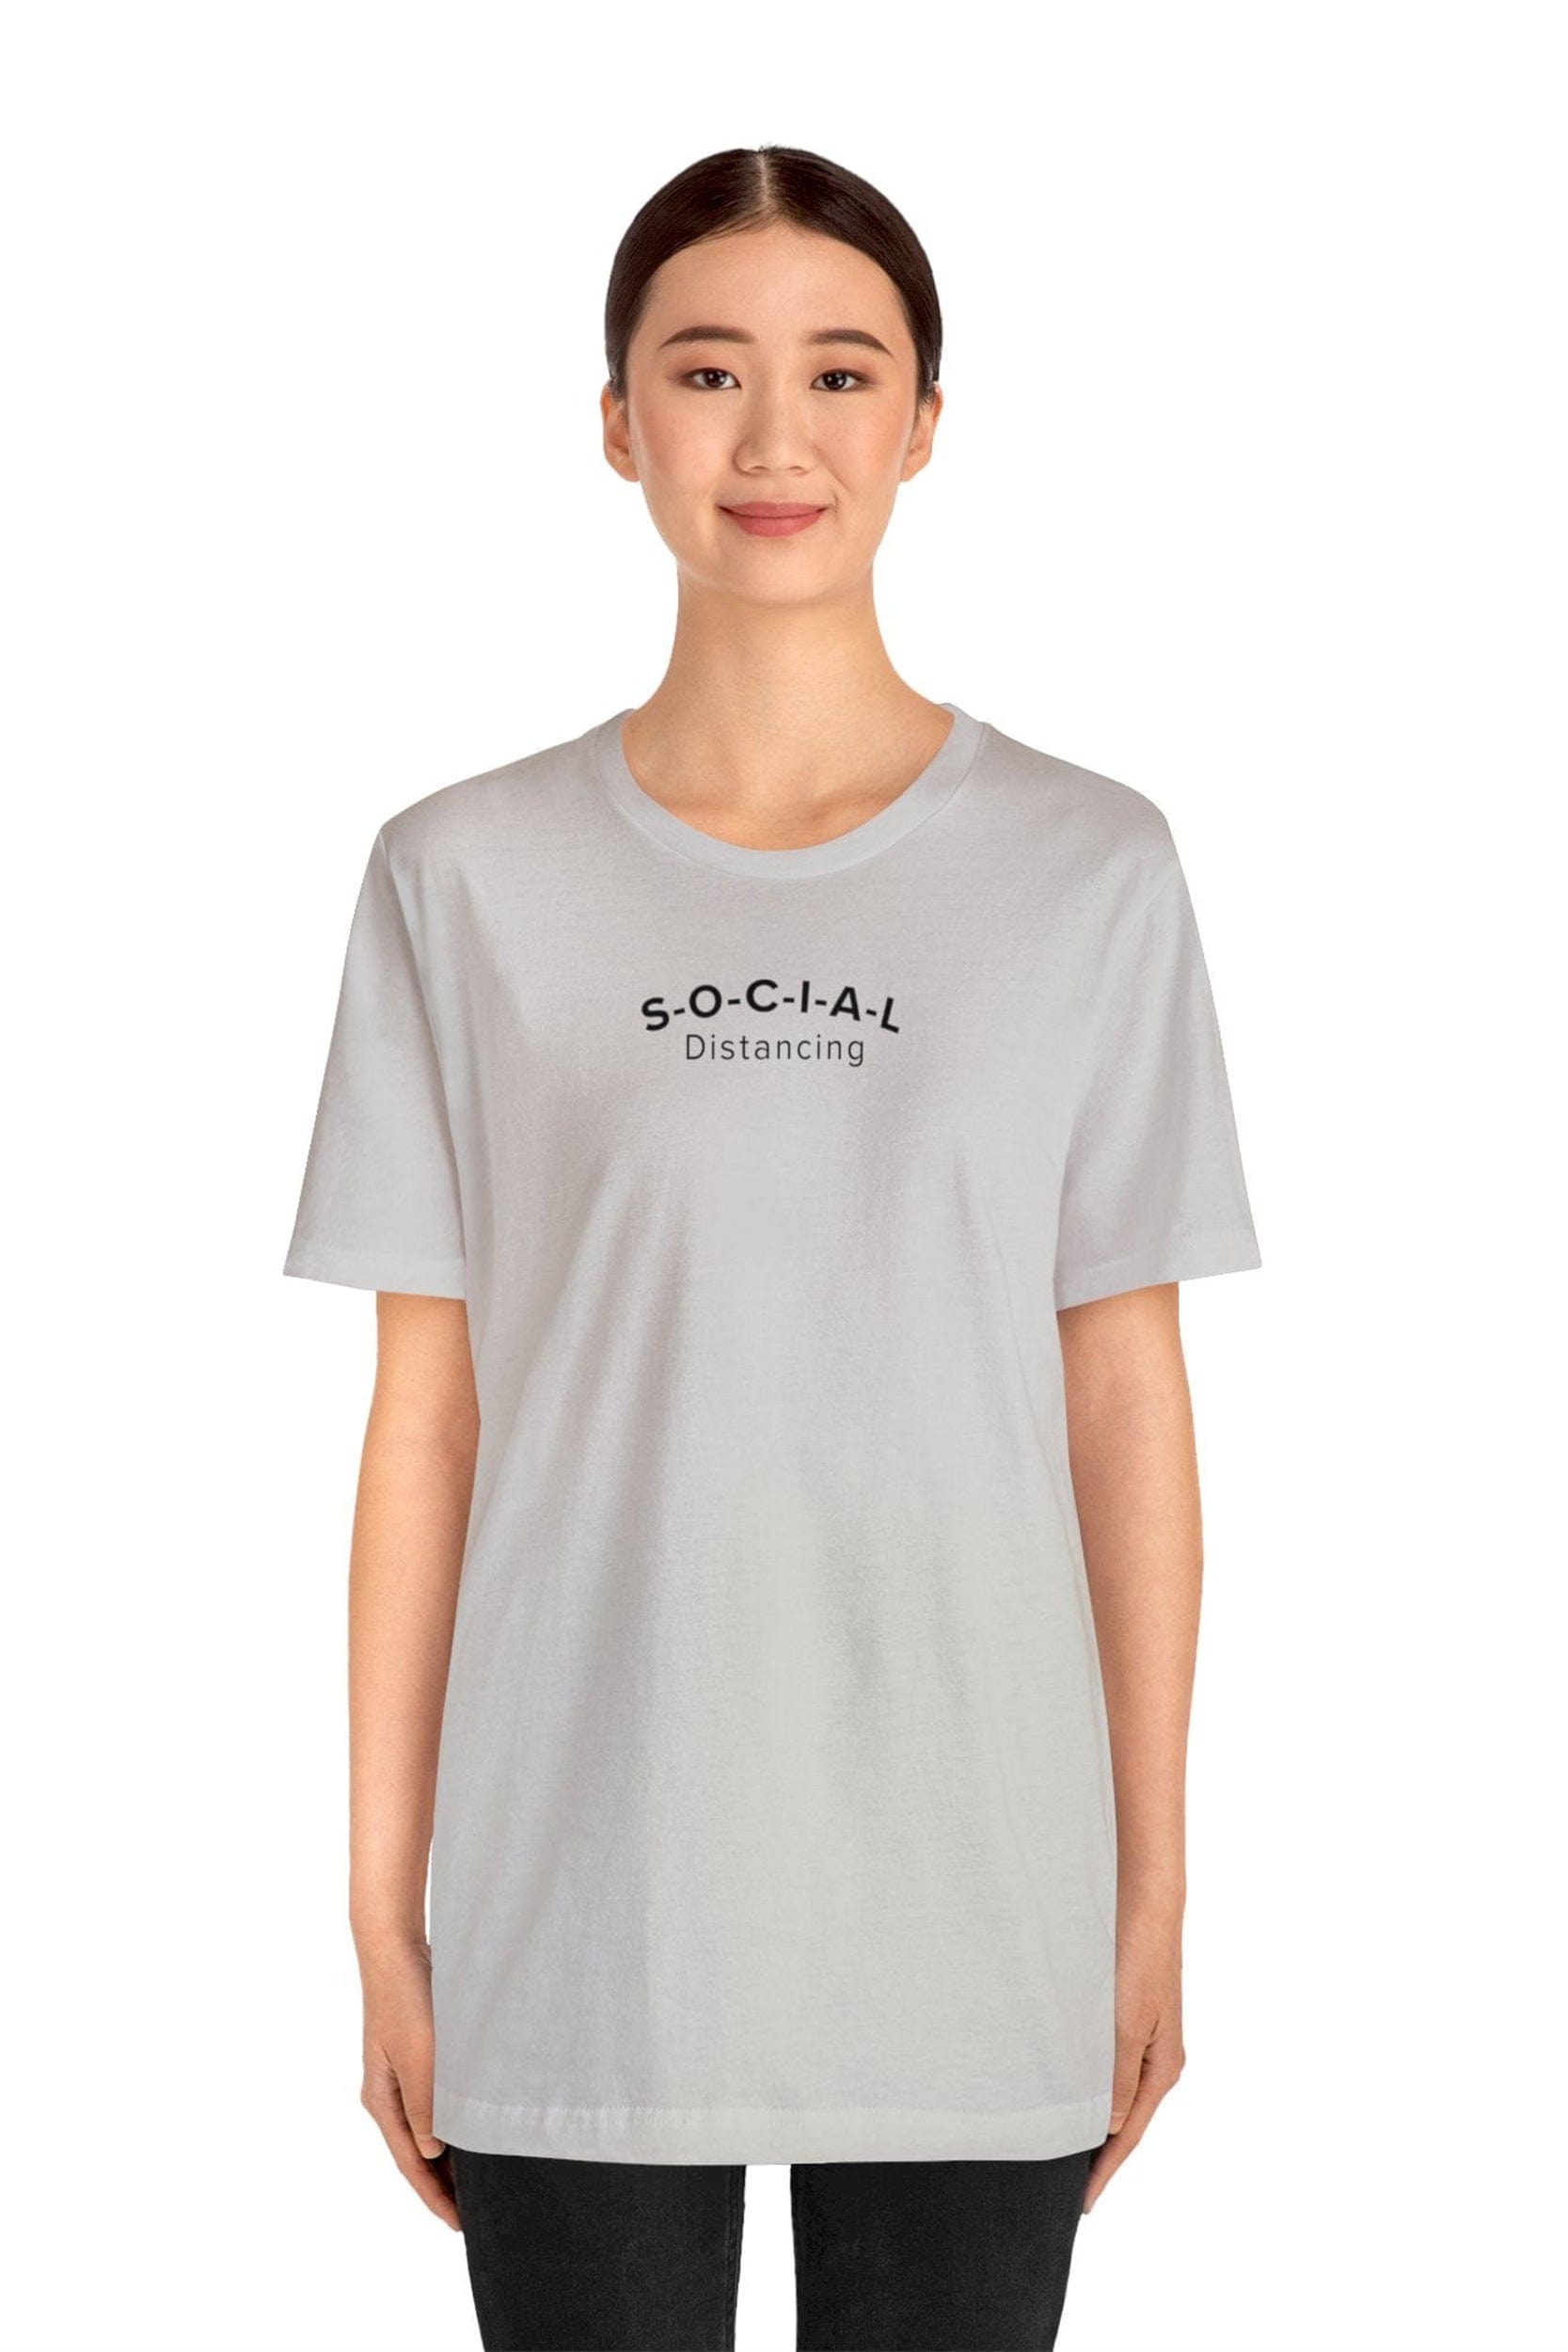 "S-O-C-I-A-L Distancing" T-Shirt